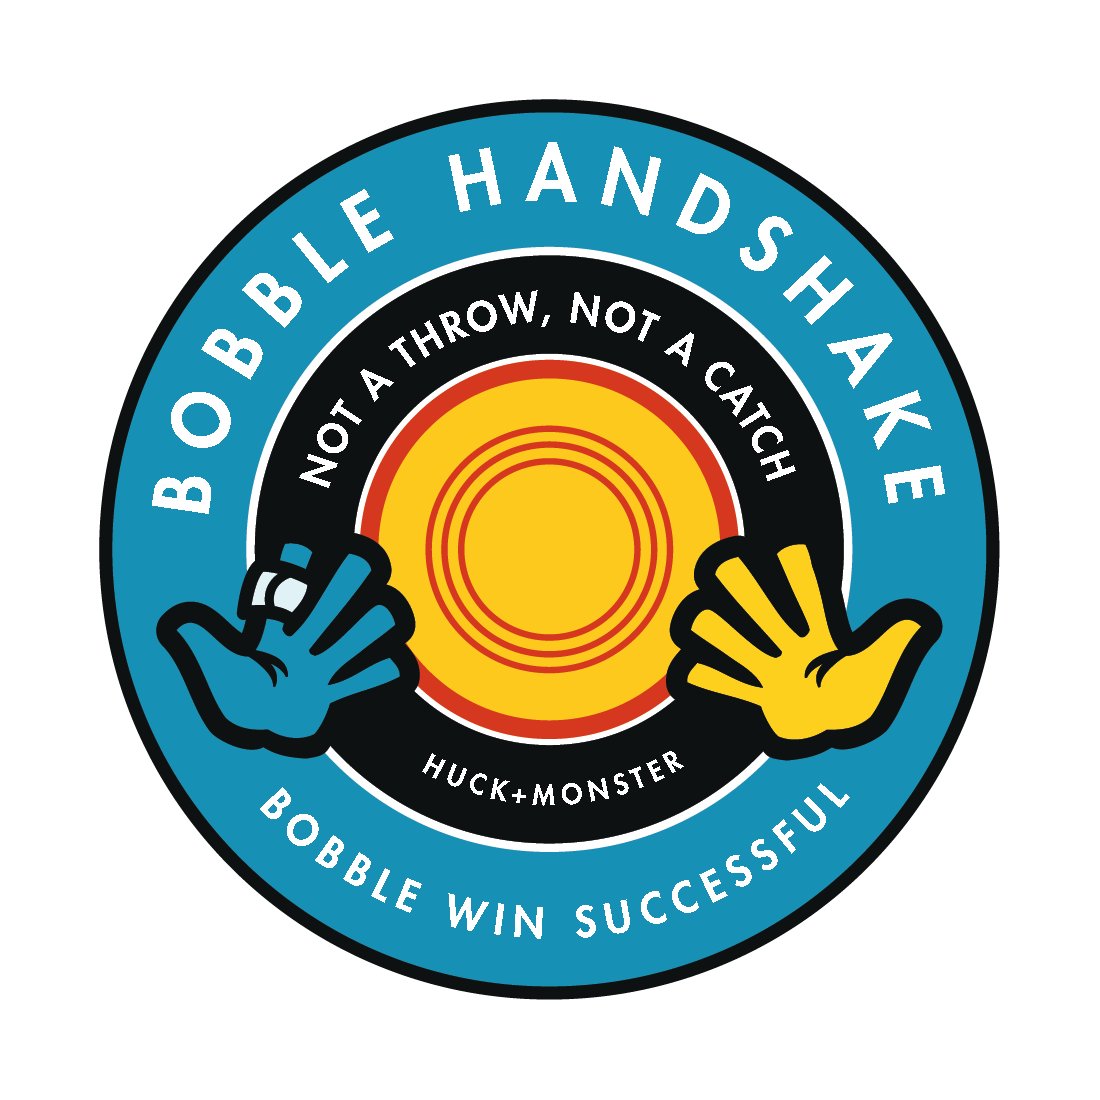 Bobble Handshake